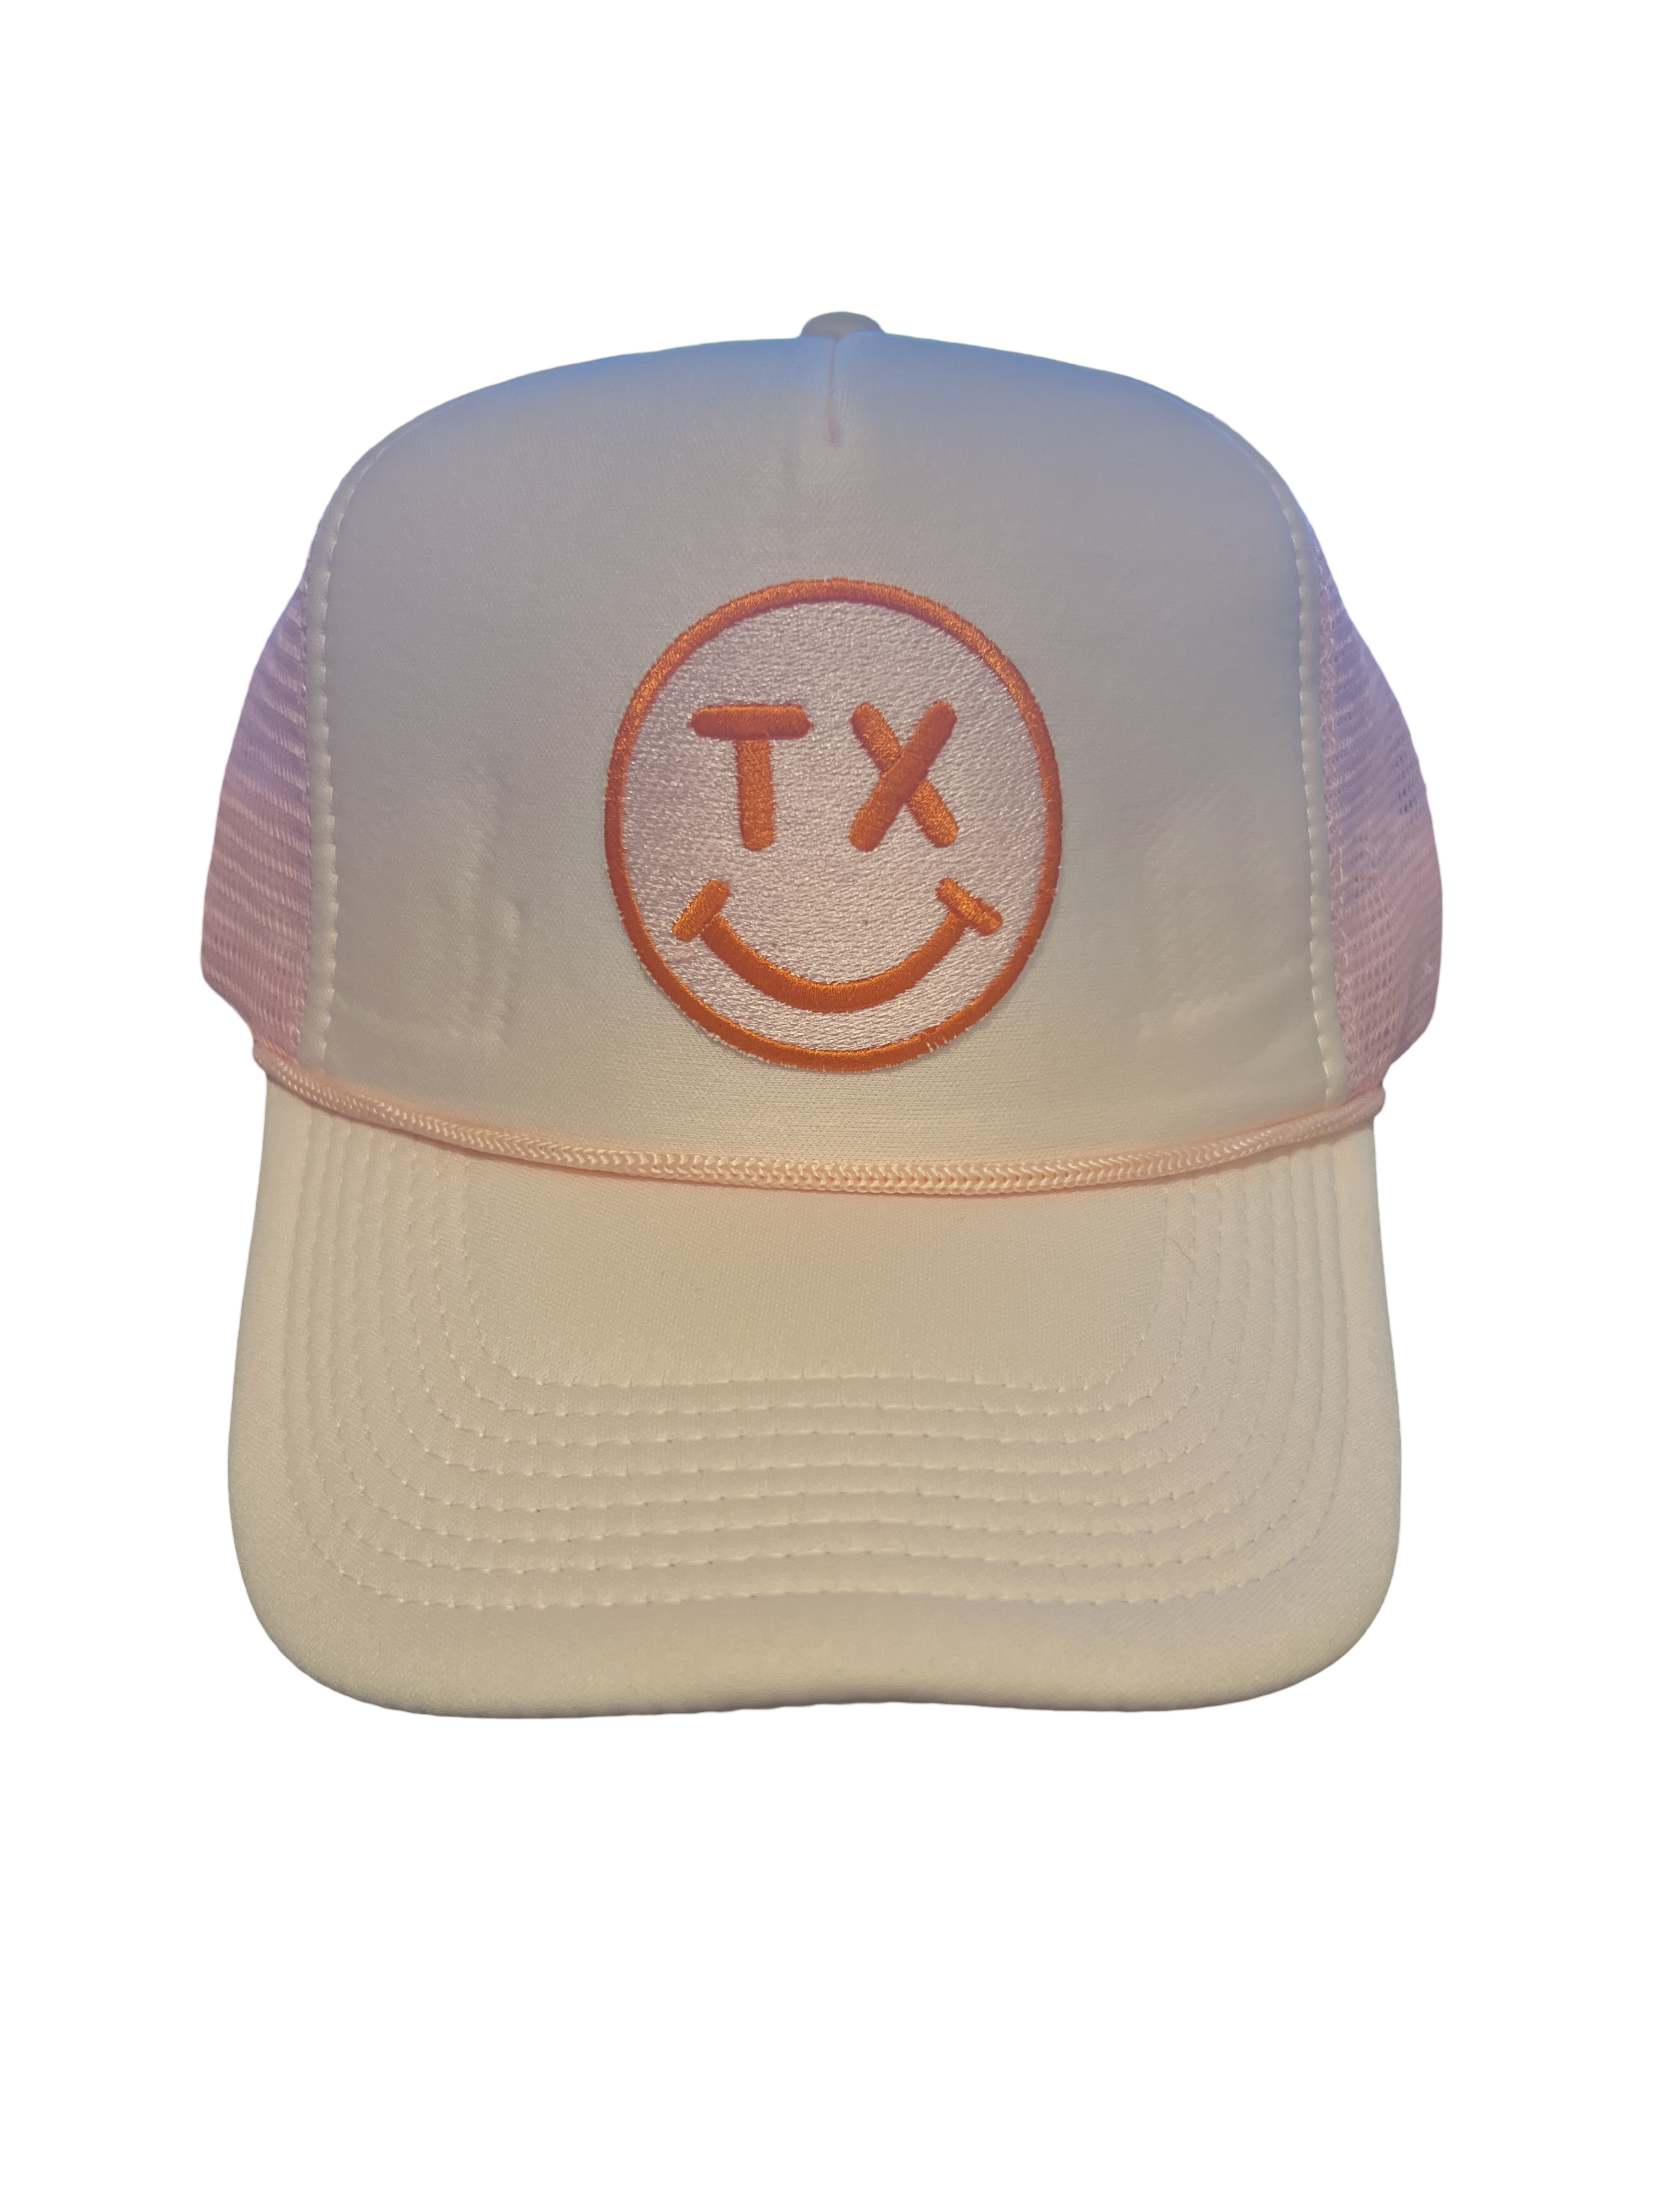 Trucker Hat Foam "TX Smiley Face"